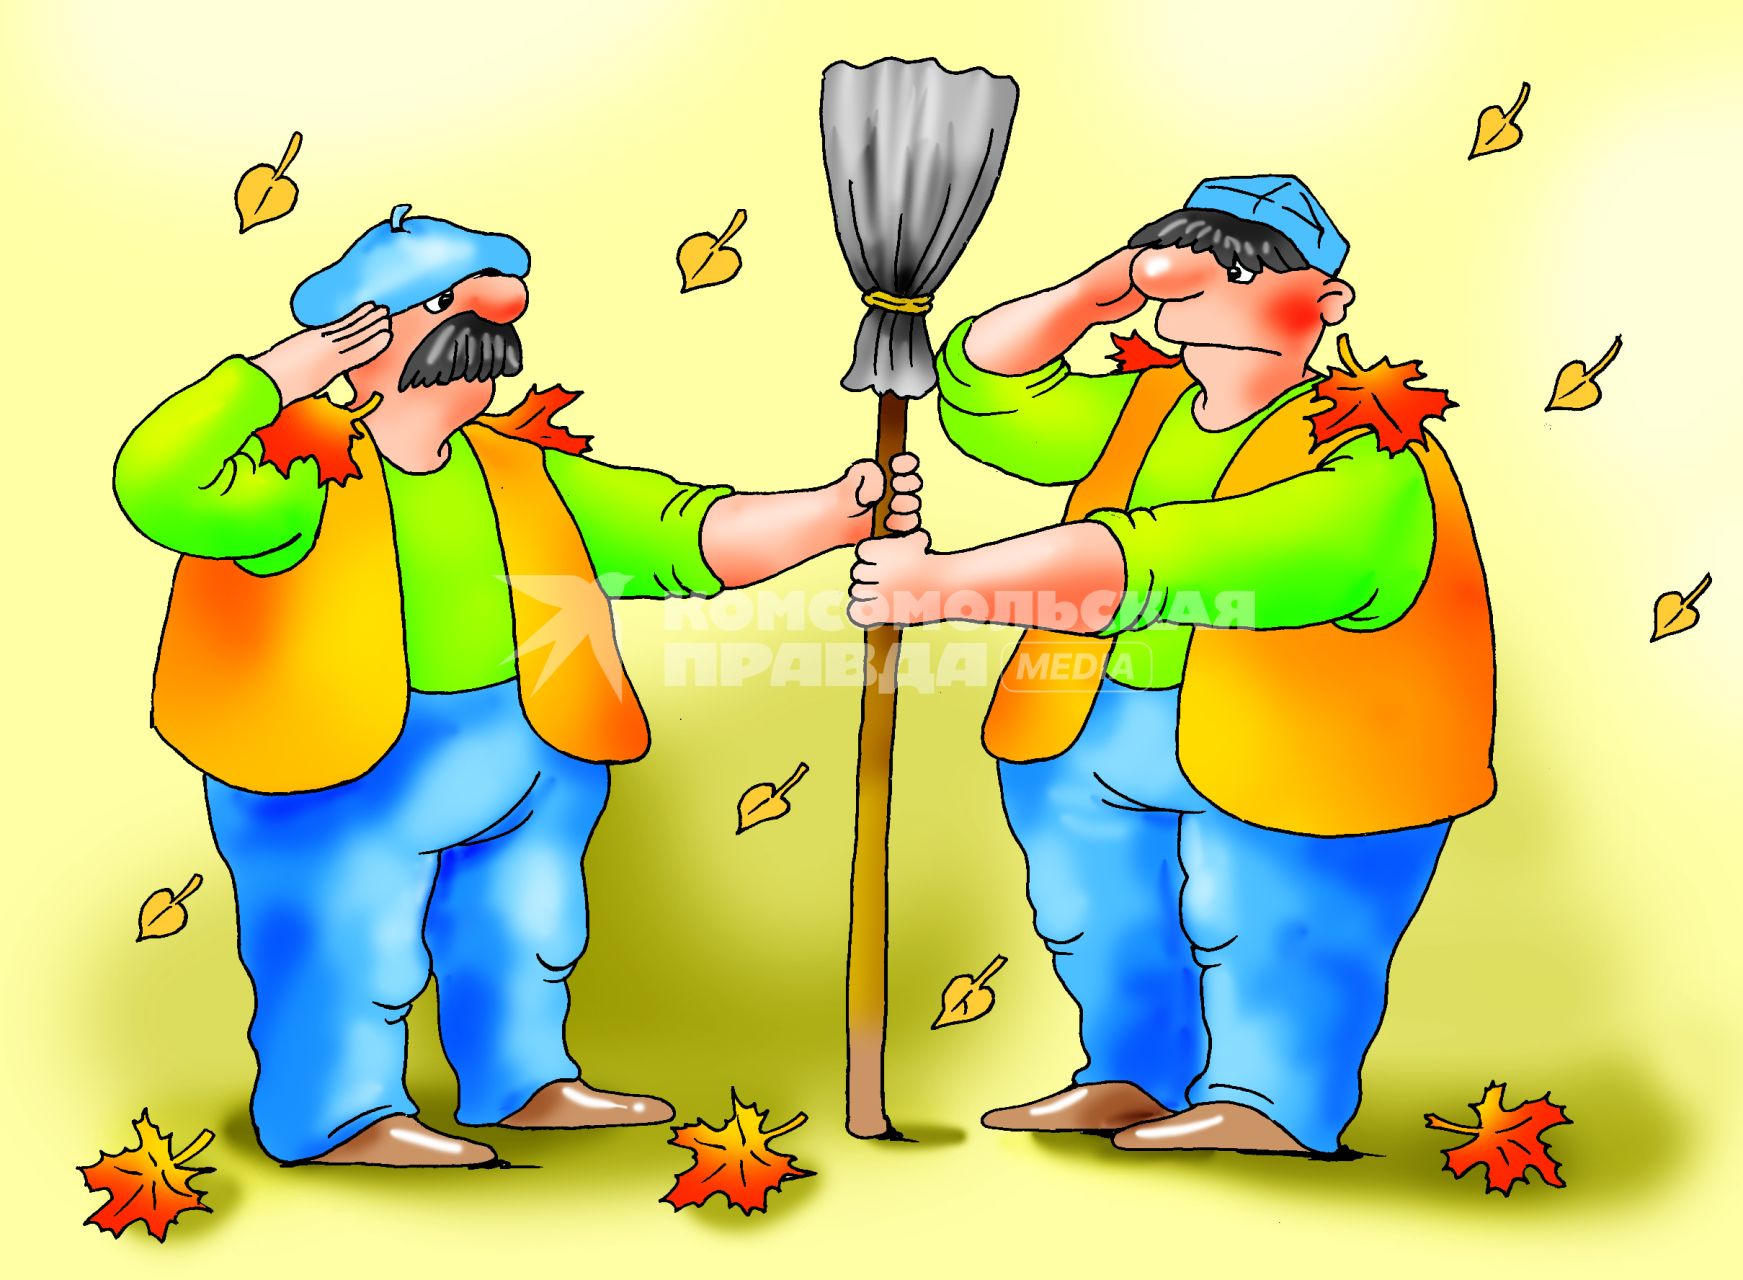 Карикатура на тему гастарбайтеров, отнимающих рабочие места у российских пенсионеров.